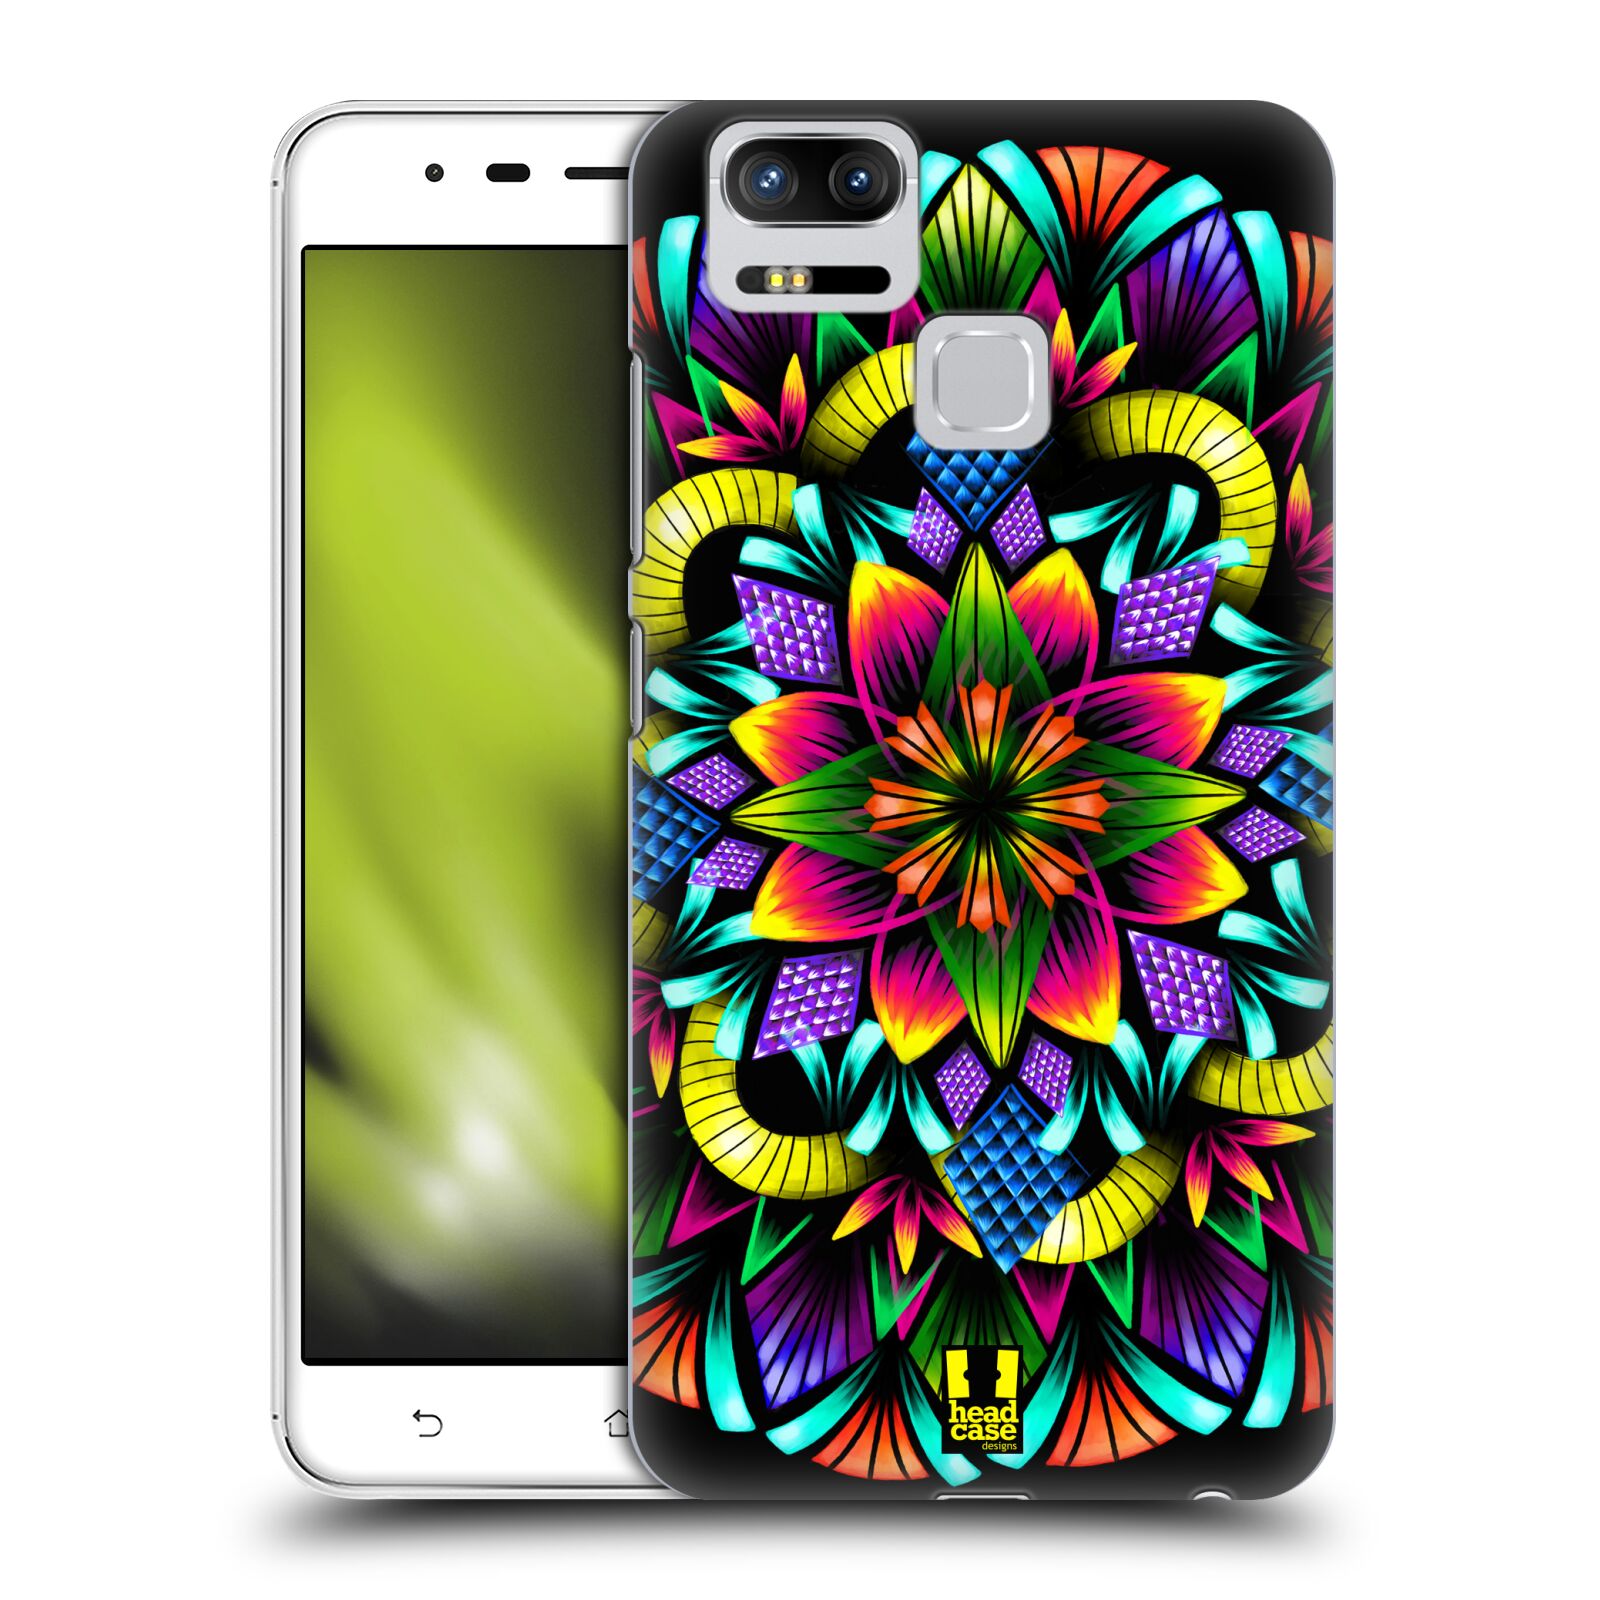 HEAD CASE plastový obal na mobil Asus Zenfone 3 Zoom ZE553KL vzor Indie Mandala kaleidoskop barevný vzor KVĚTINA